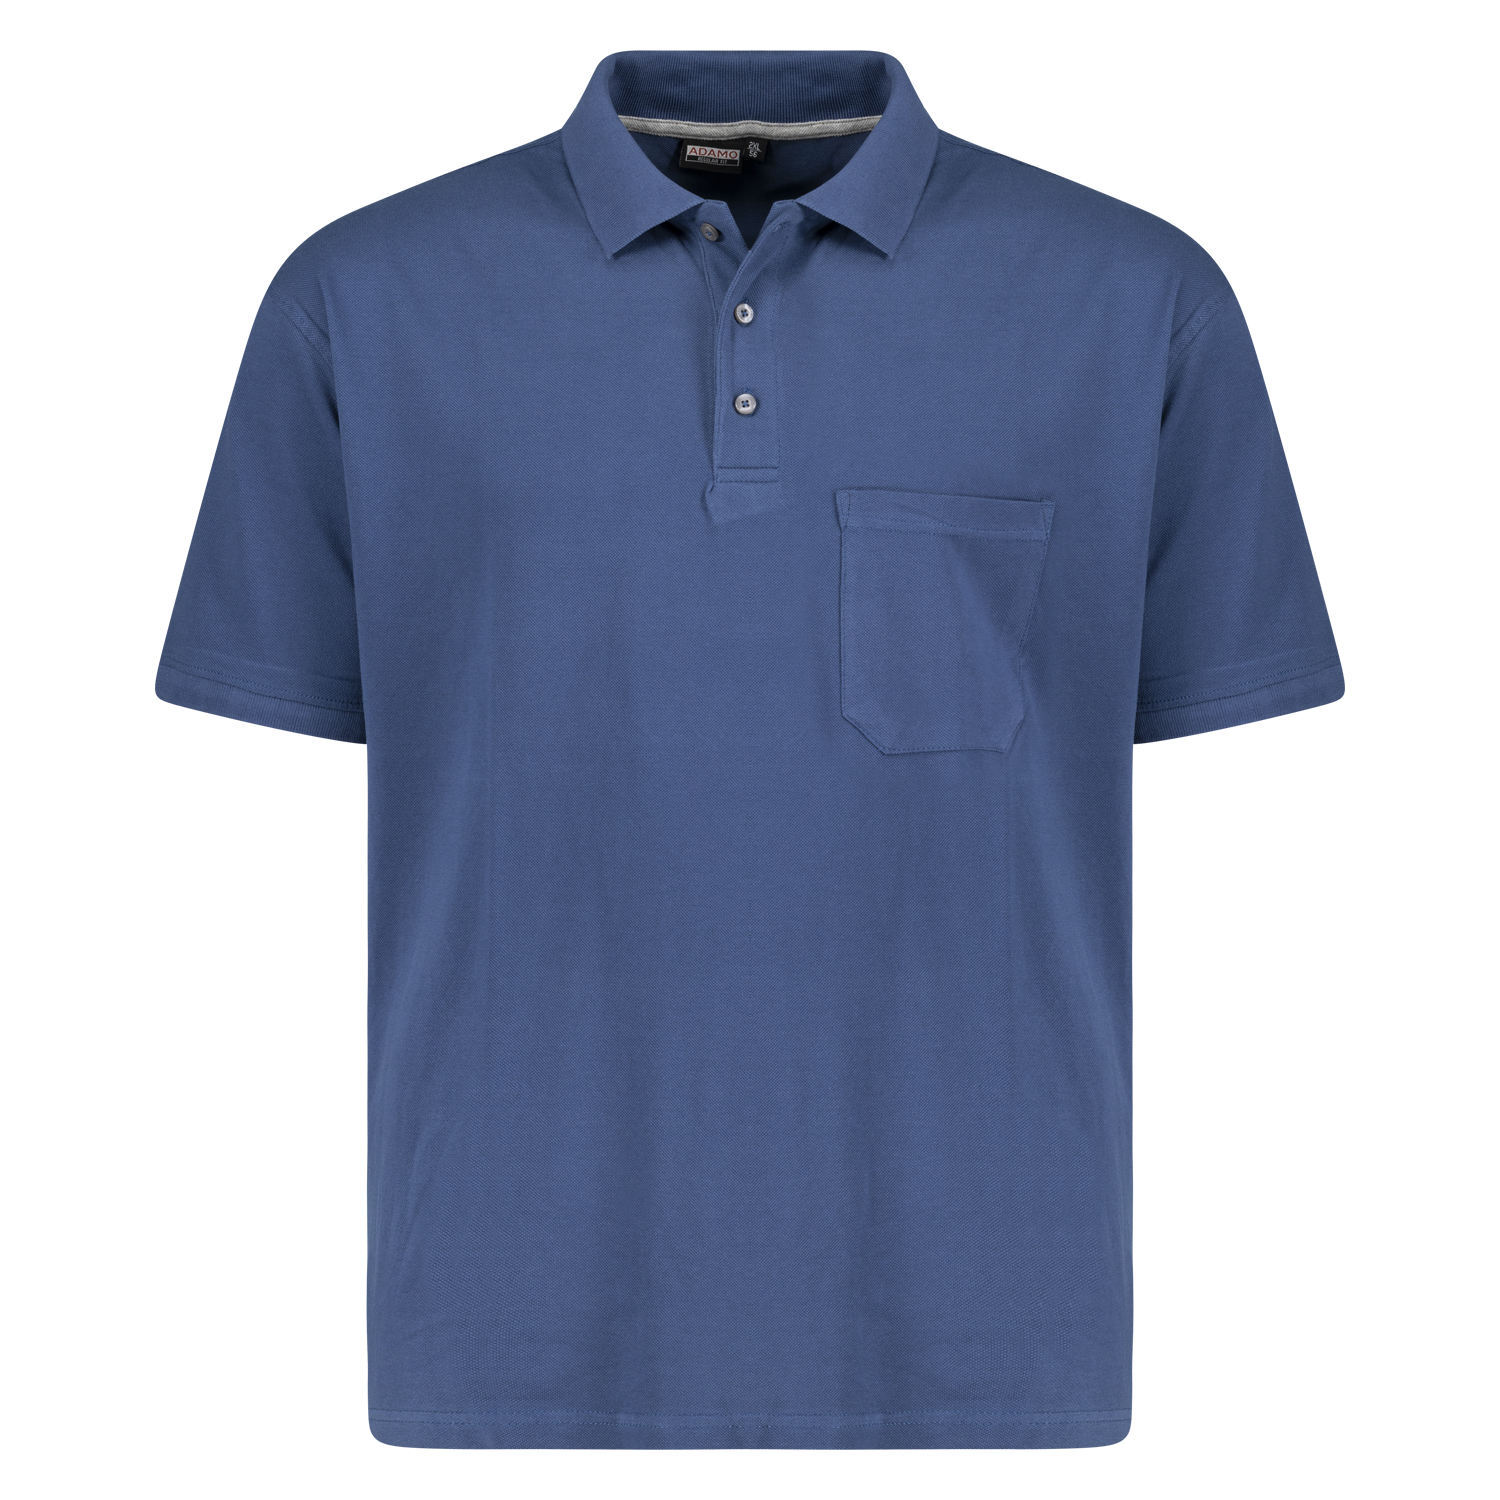 Admiralblaues Kurzarm Polo Shirt KLAAS von ADAMO in Pique Qualität für Herren in großen Größen bis 10XL